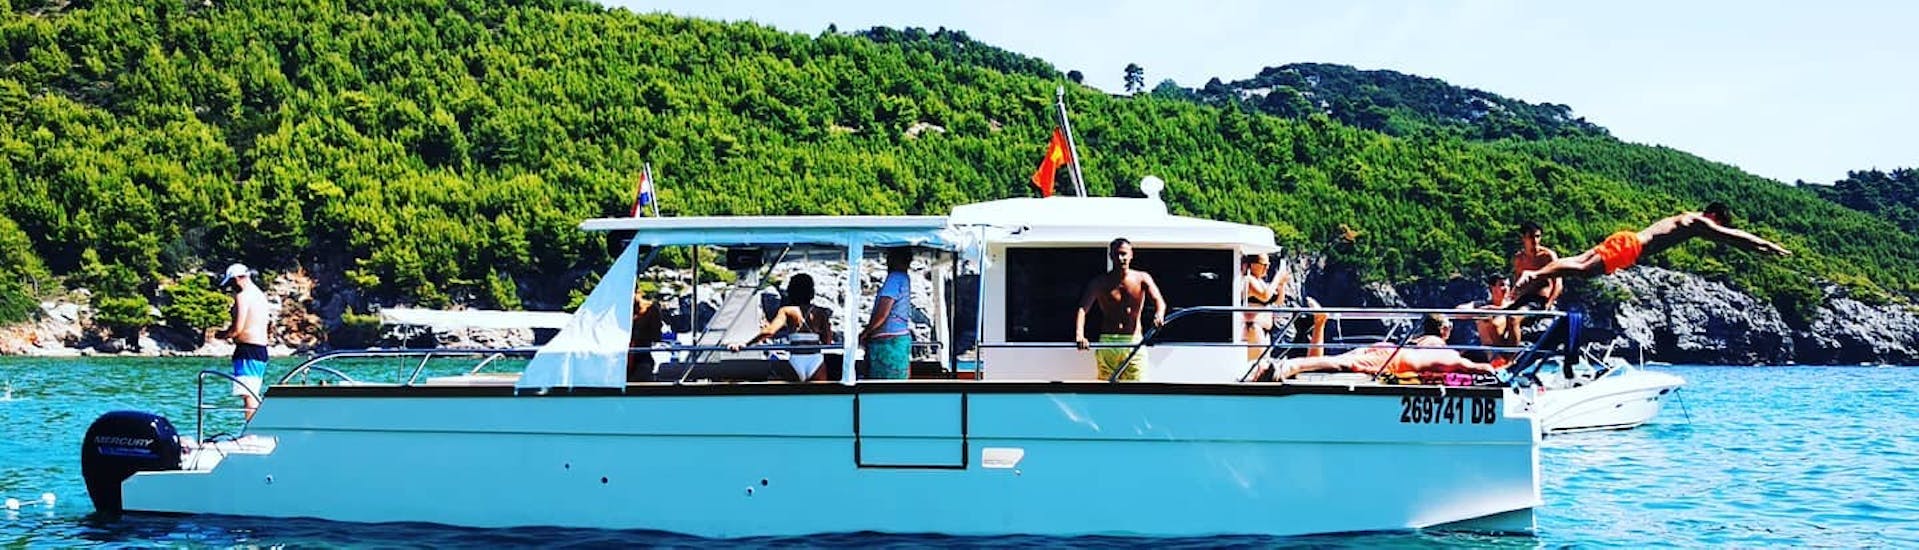 Foto van enkele passagiers aan boord tijdens een halve dag catamarantrip van Dubrovnik naar de Blauwe Grot met snorkelen.